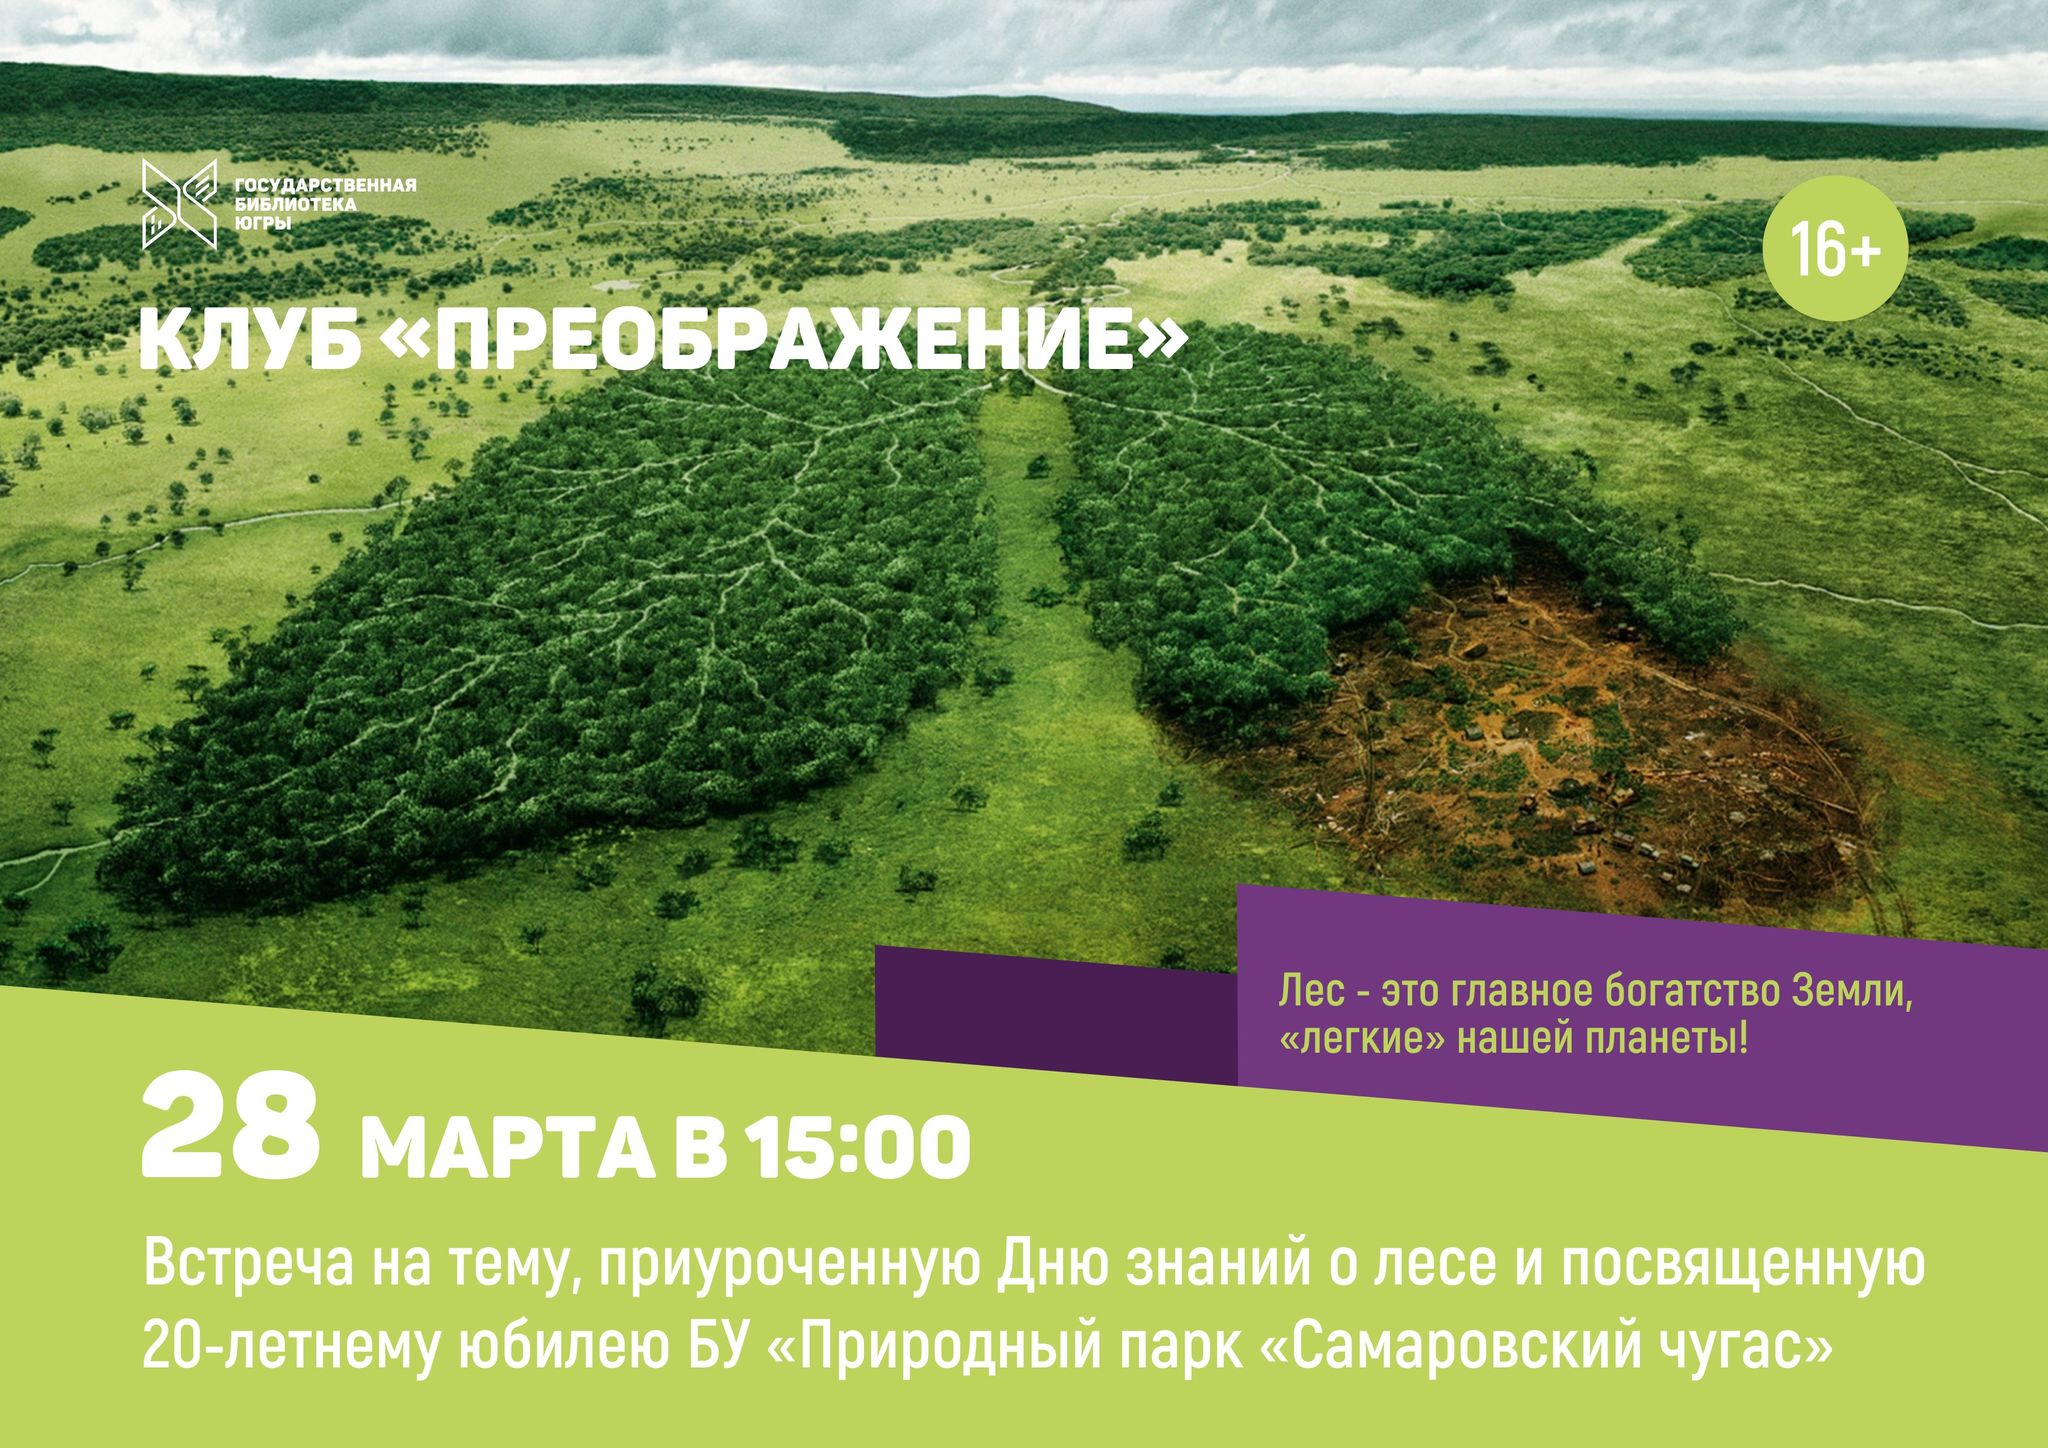 Жителей Ханты-Мансийска приглашают обсудить судьбу природного парка «Самаровский чугас»